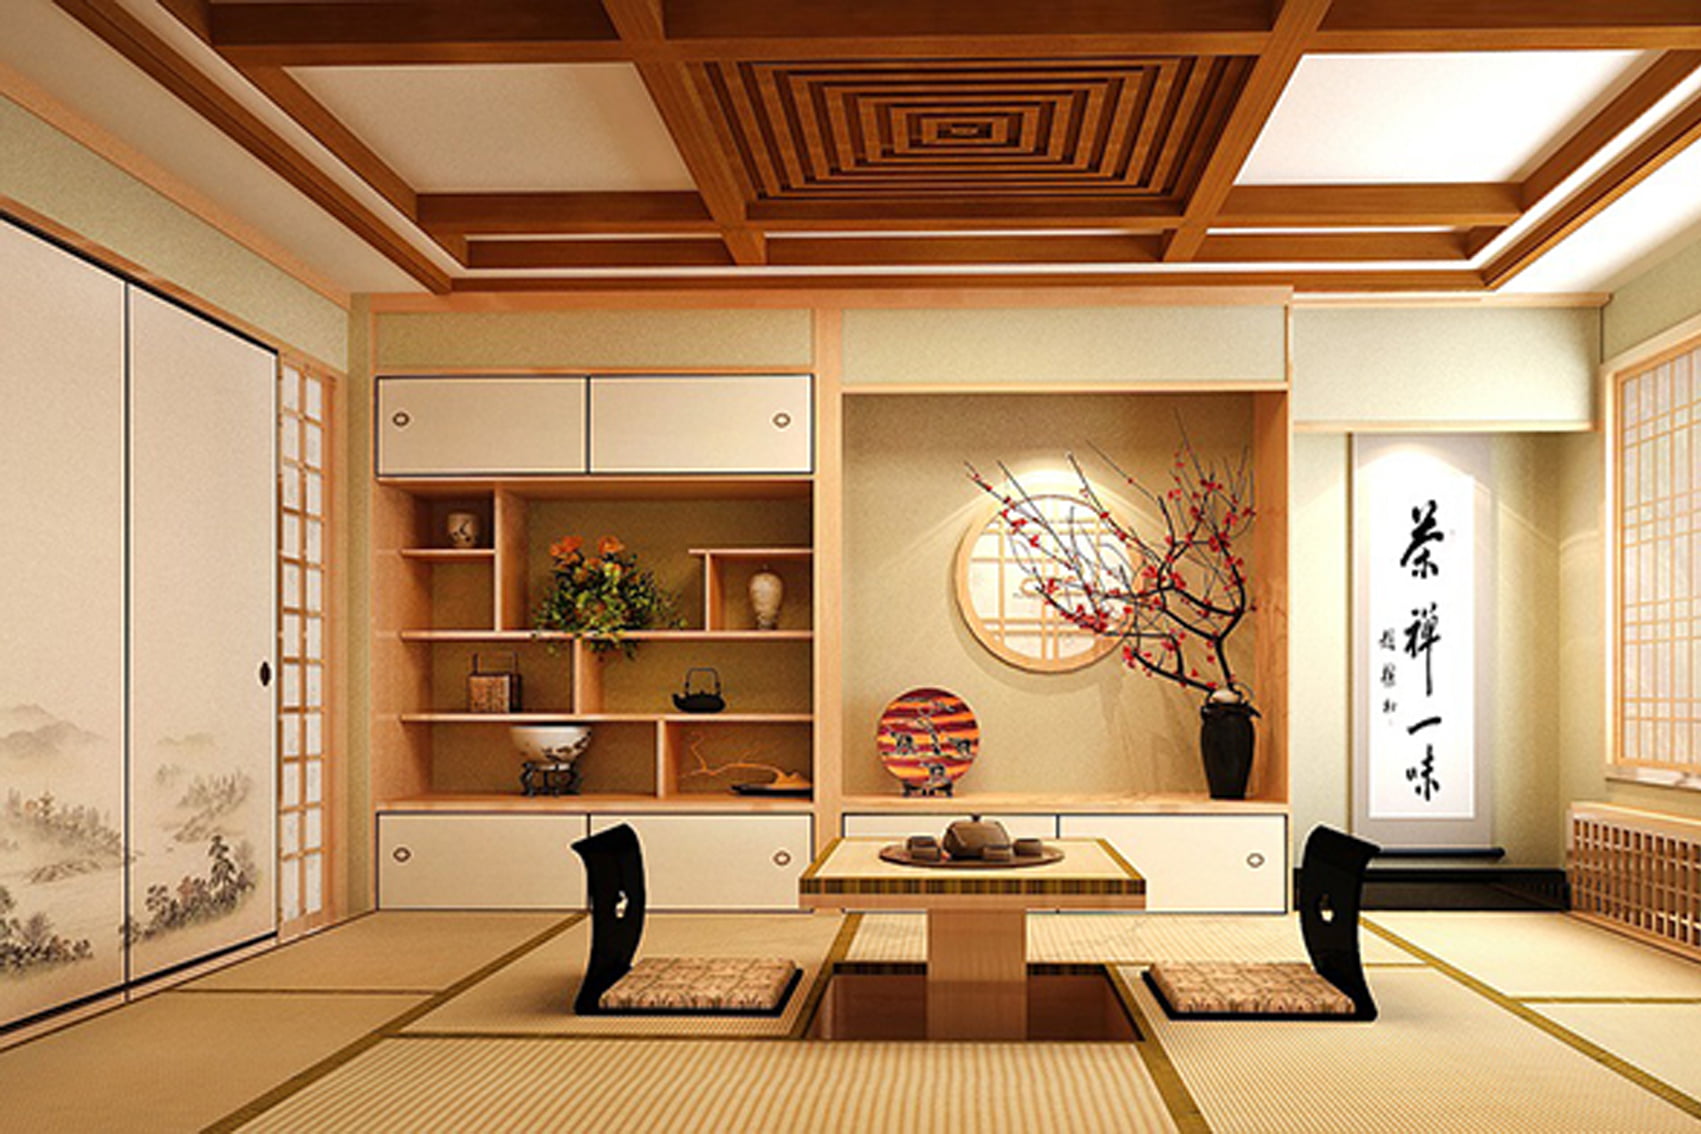 Thiết kế nội thất chung cư theo phong cách Nhật Bản mang đến cho người dùng sự sống động, tinh tế và gần gũi. Các đặc trưng như tông màu trầm, sử dụng gỗ và giấy Nhật, hay các chi tiết trang trí nhỏ tinh tế. Năm 2024, sự tinh tế này sẽ được phát triển hơn nữa, với các ý tưởng sáng tạo để mang lại trải nghiệm sống tốt nhất cho người dùng.